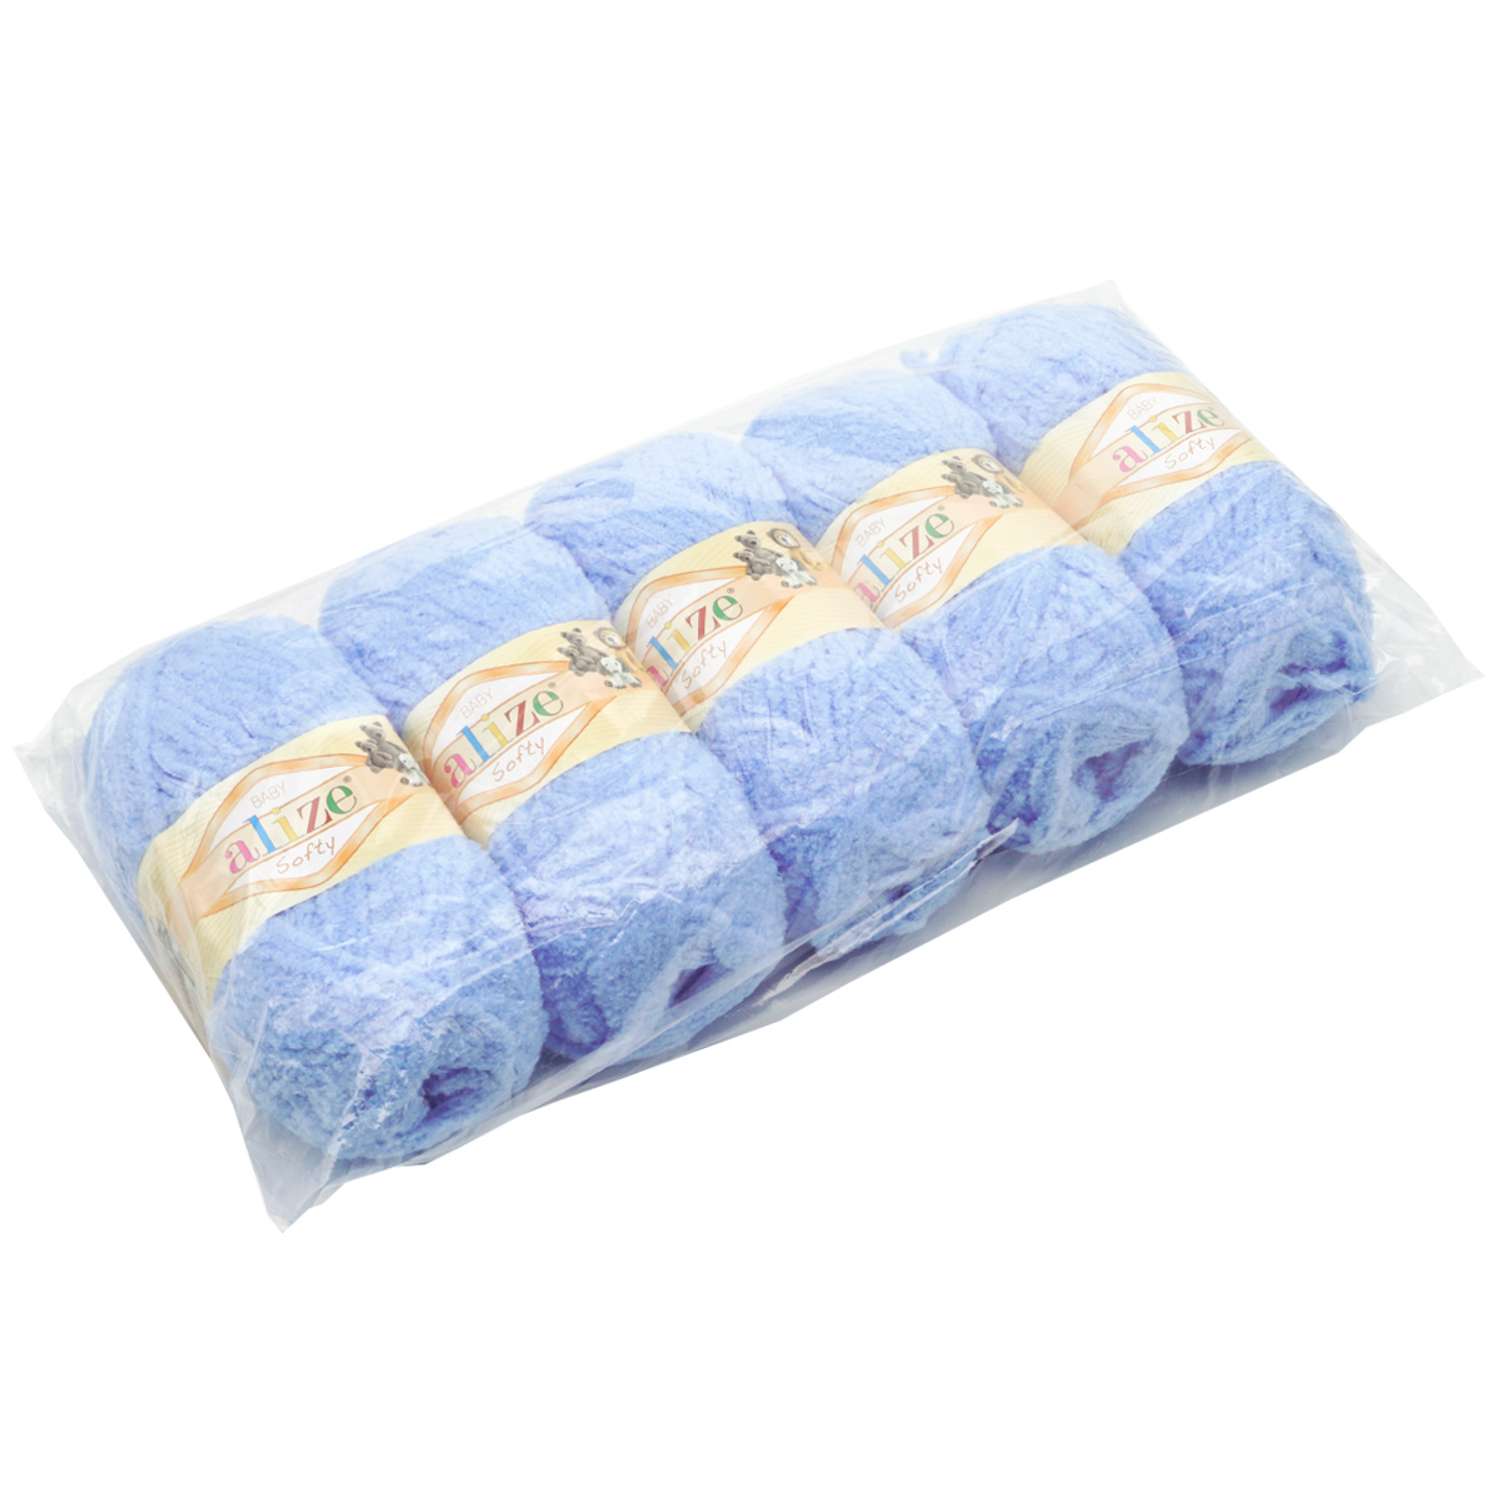 Пряжа для вязания Alize softy 50 гр 115 м микрополиэстер мягкая фантазийная 40 голубой 5 мотков - фото 8